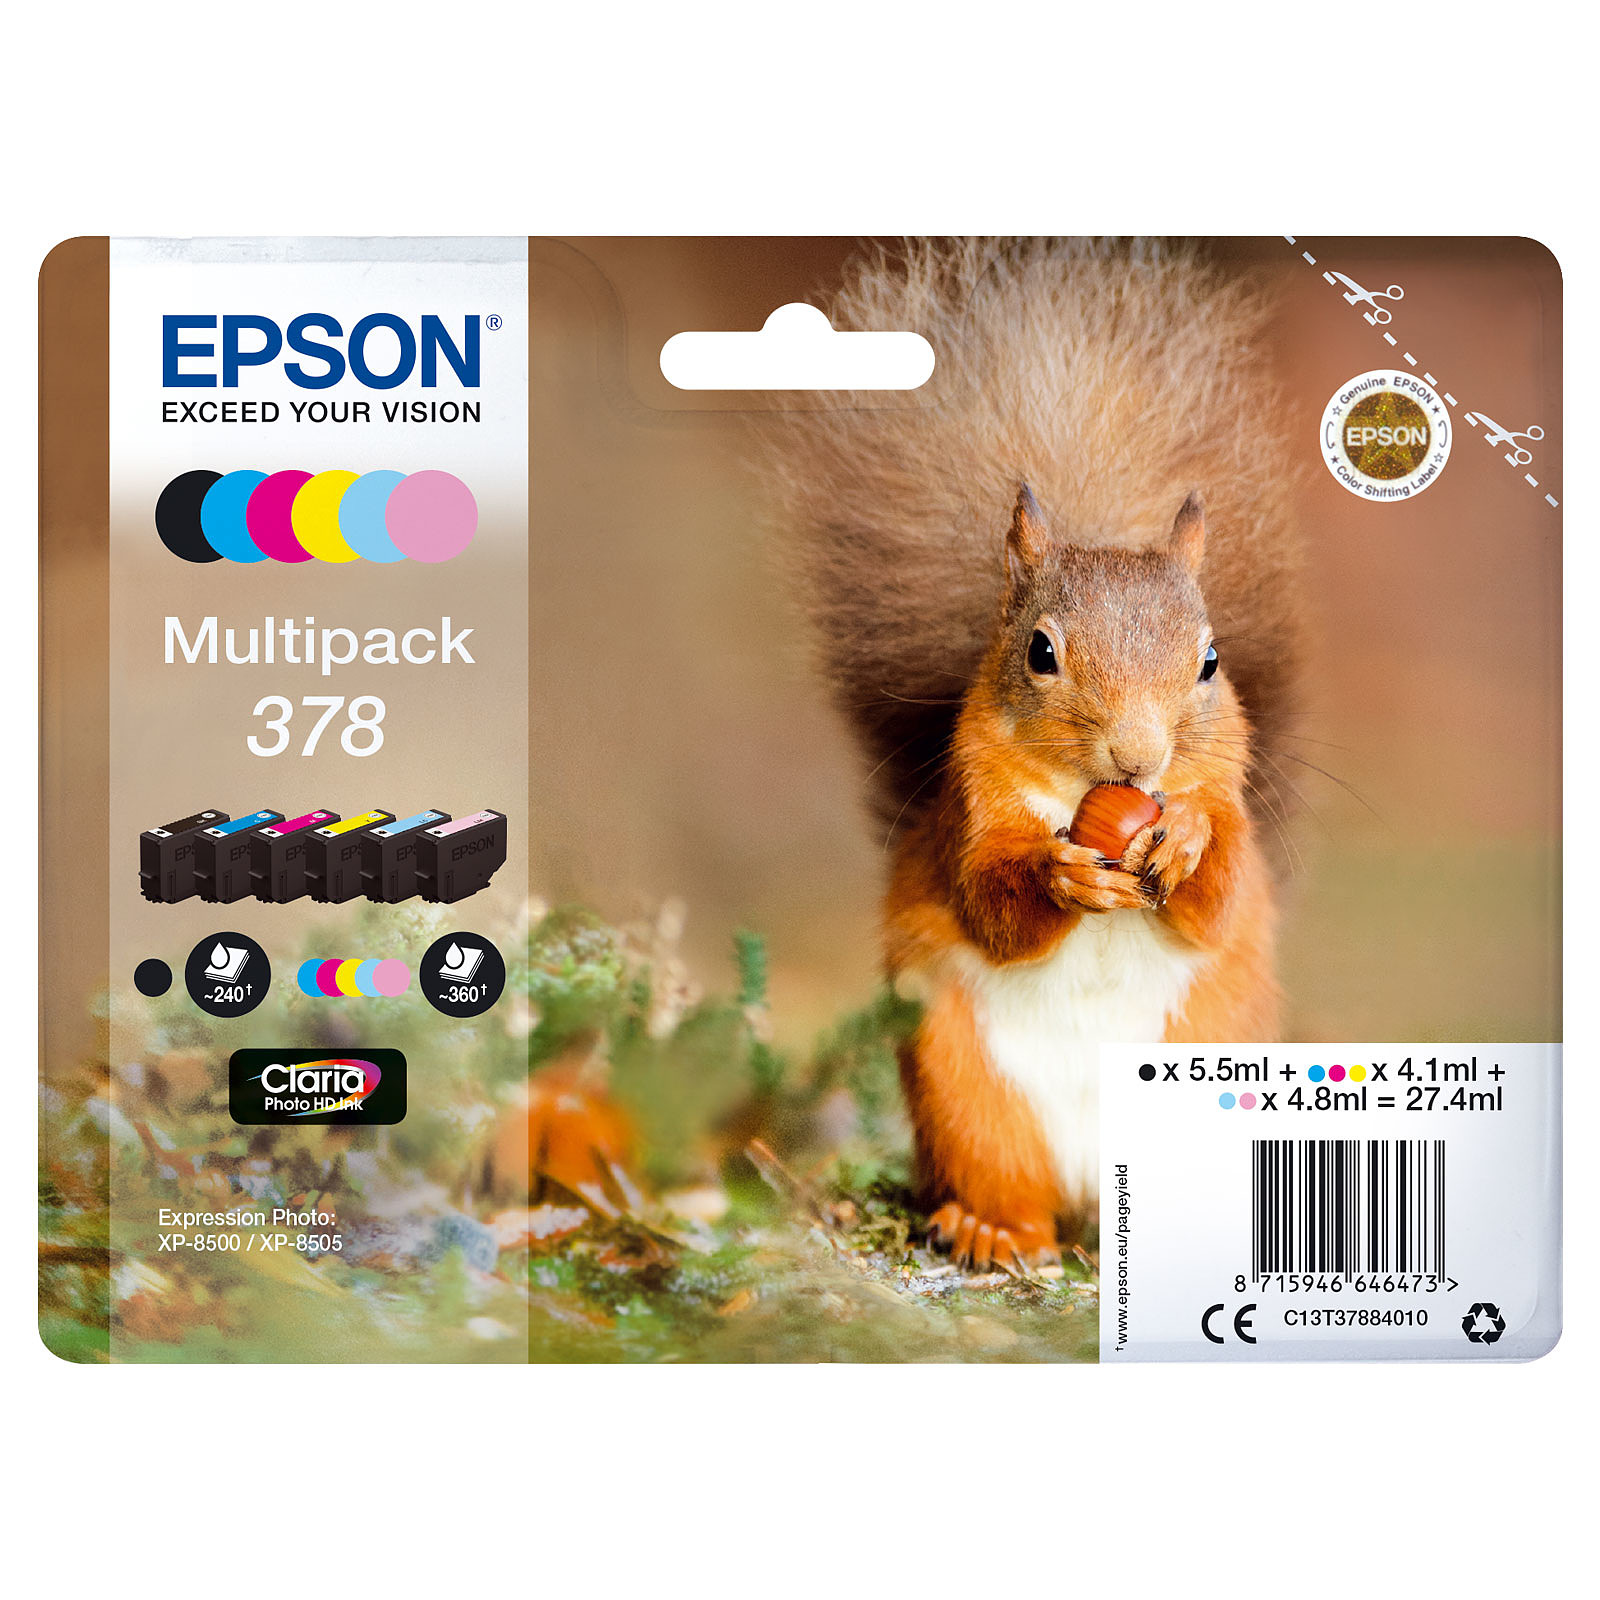 Epson Ecureuil Multipack 378 - Cartouche imprimante Epson